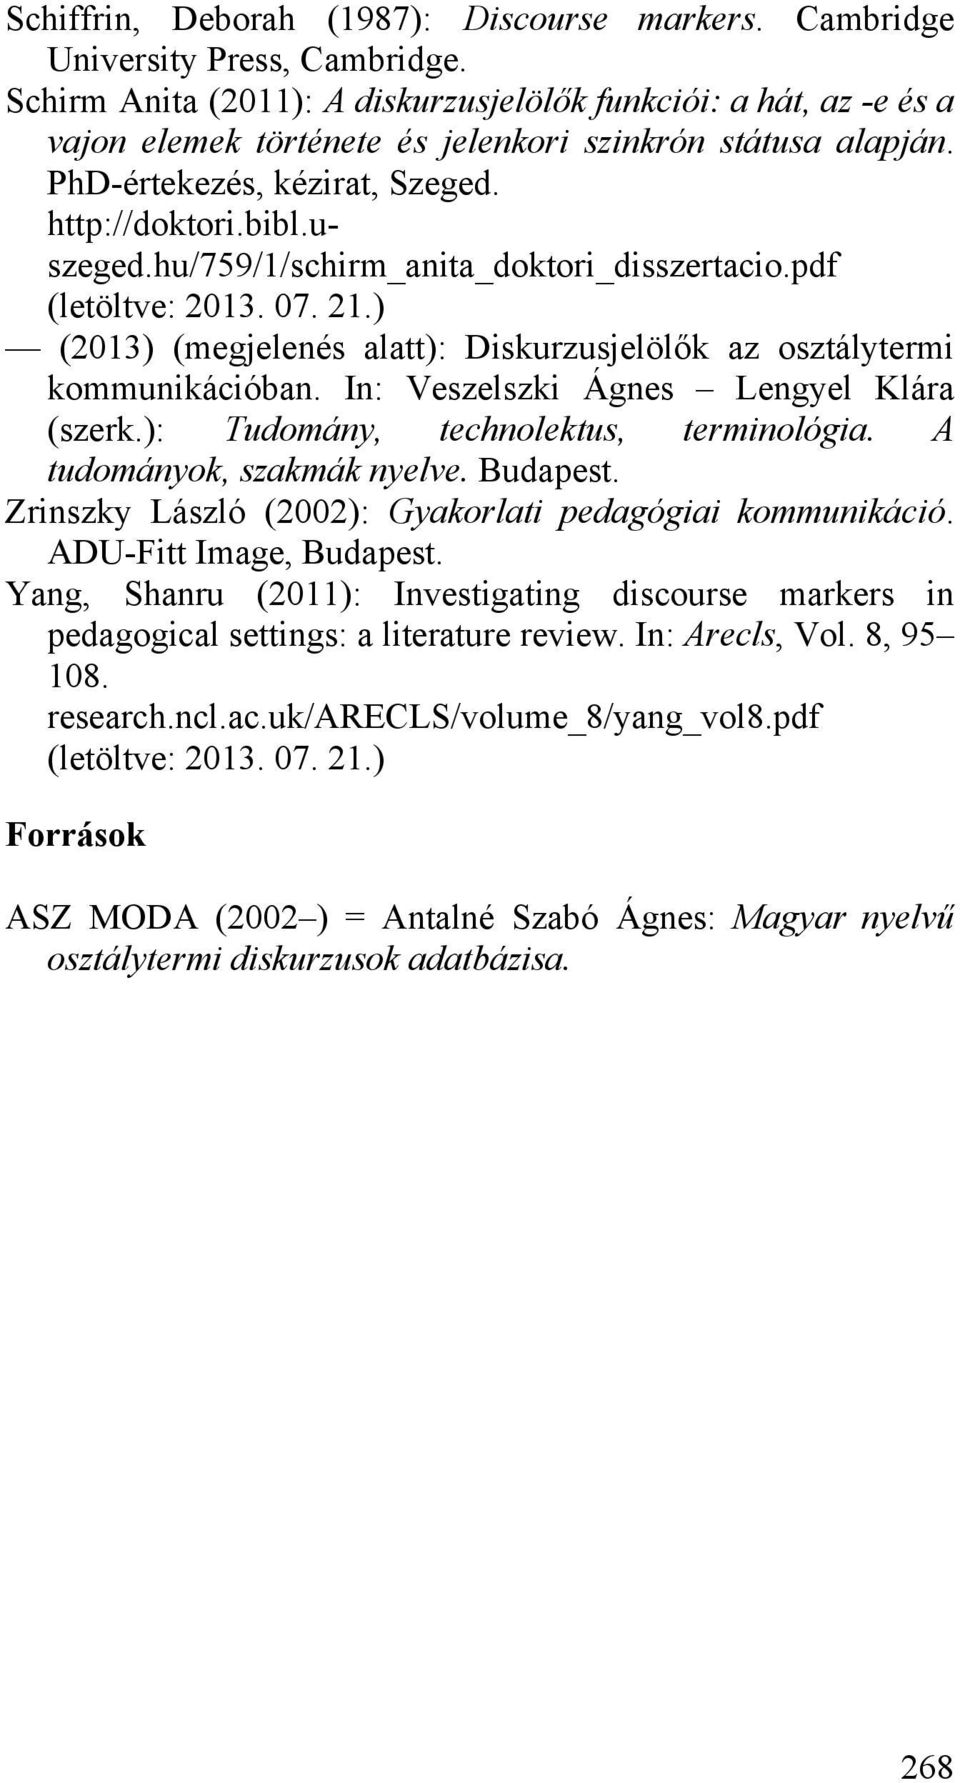 hu/759/1/schirm_anita_doktori_disszertacio.pdf (letöltve: 2013. 07. 21.) (2013) (megjelenés alatt): Diskurzusjelölők az osztálytermi kommunikációban. In: Veszelszki Ágnes Lengyel Klára (szerk.